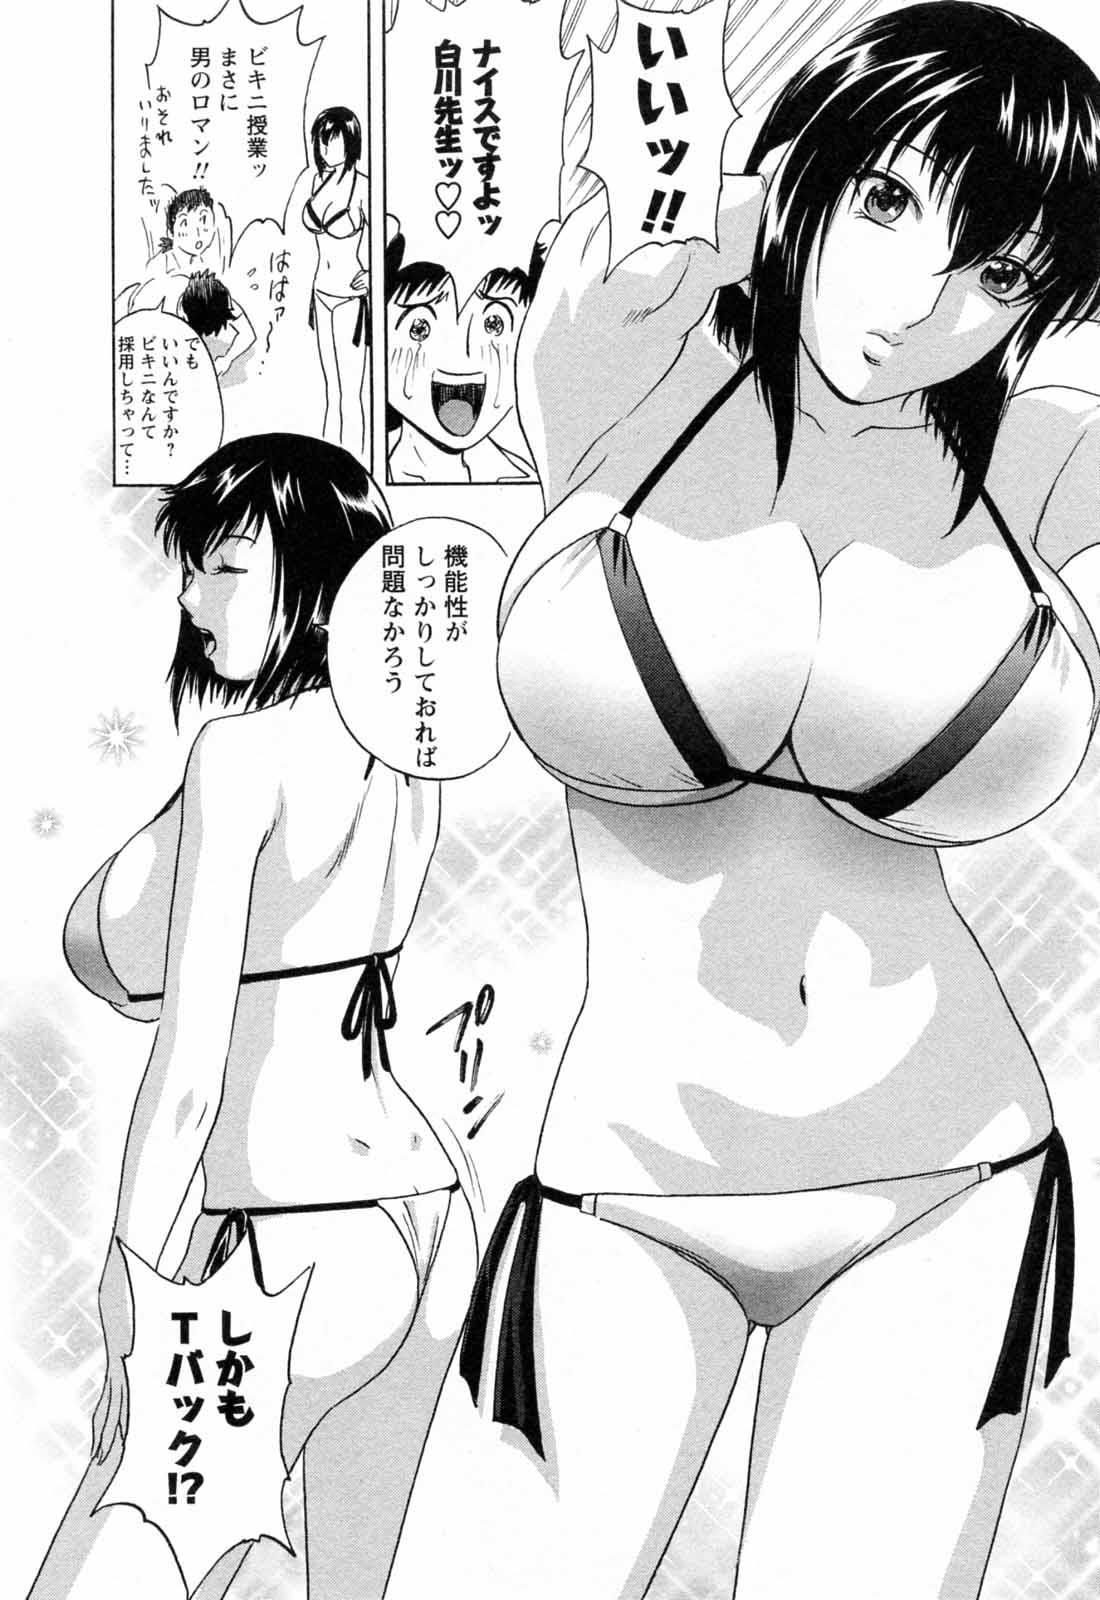 [Hidemaru] Mo-Retsu! Boin Sensei (Boing Boing Teacher) Vol.5 121